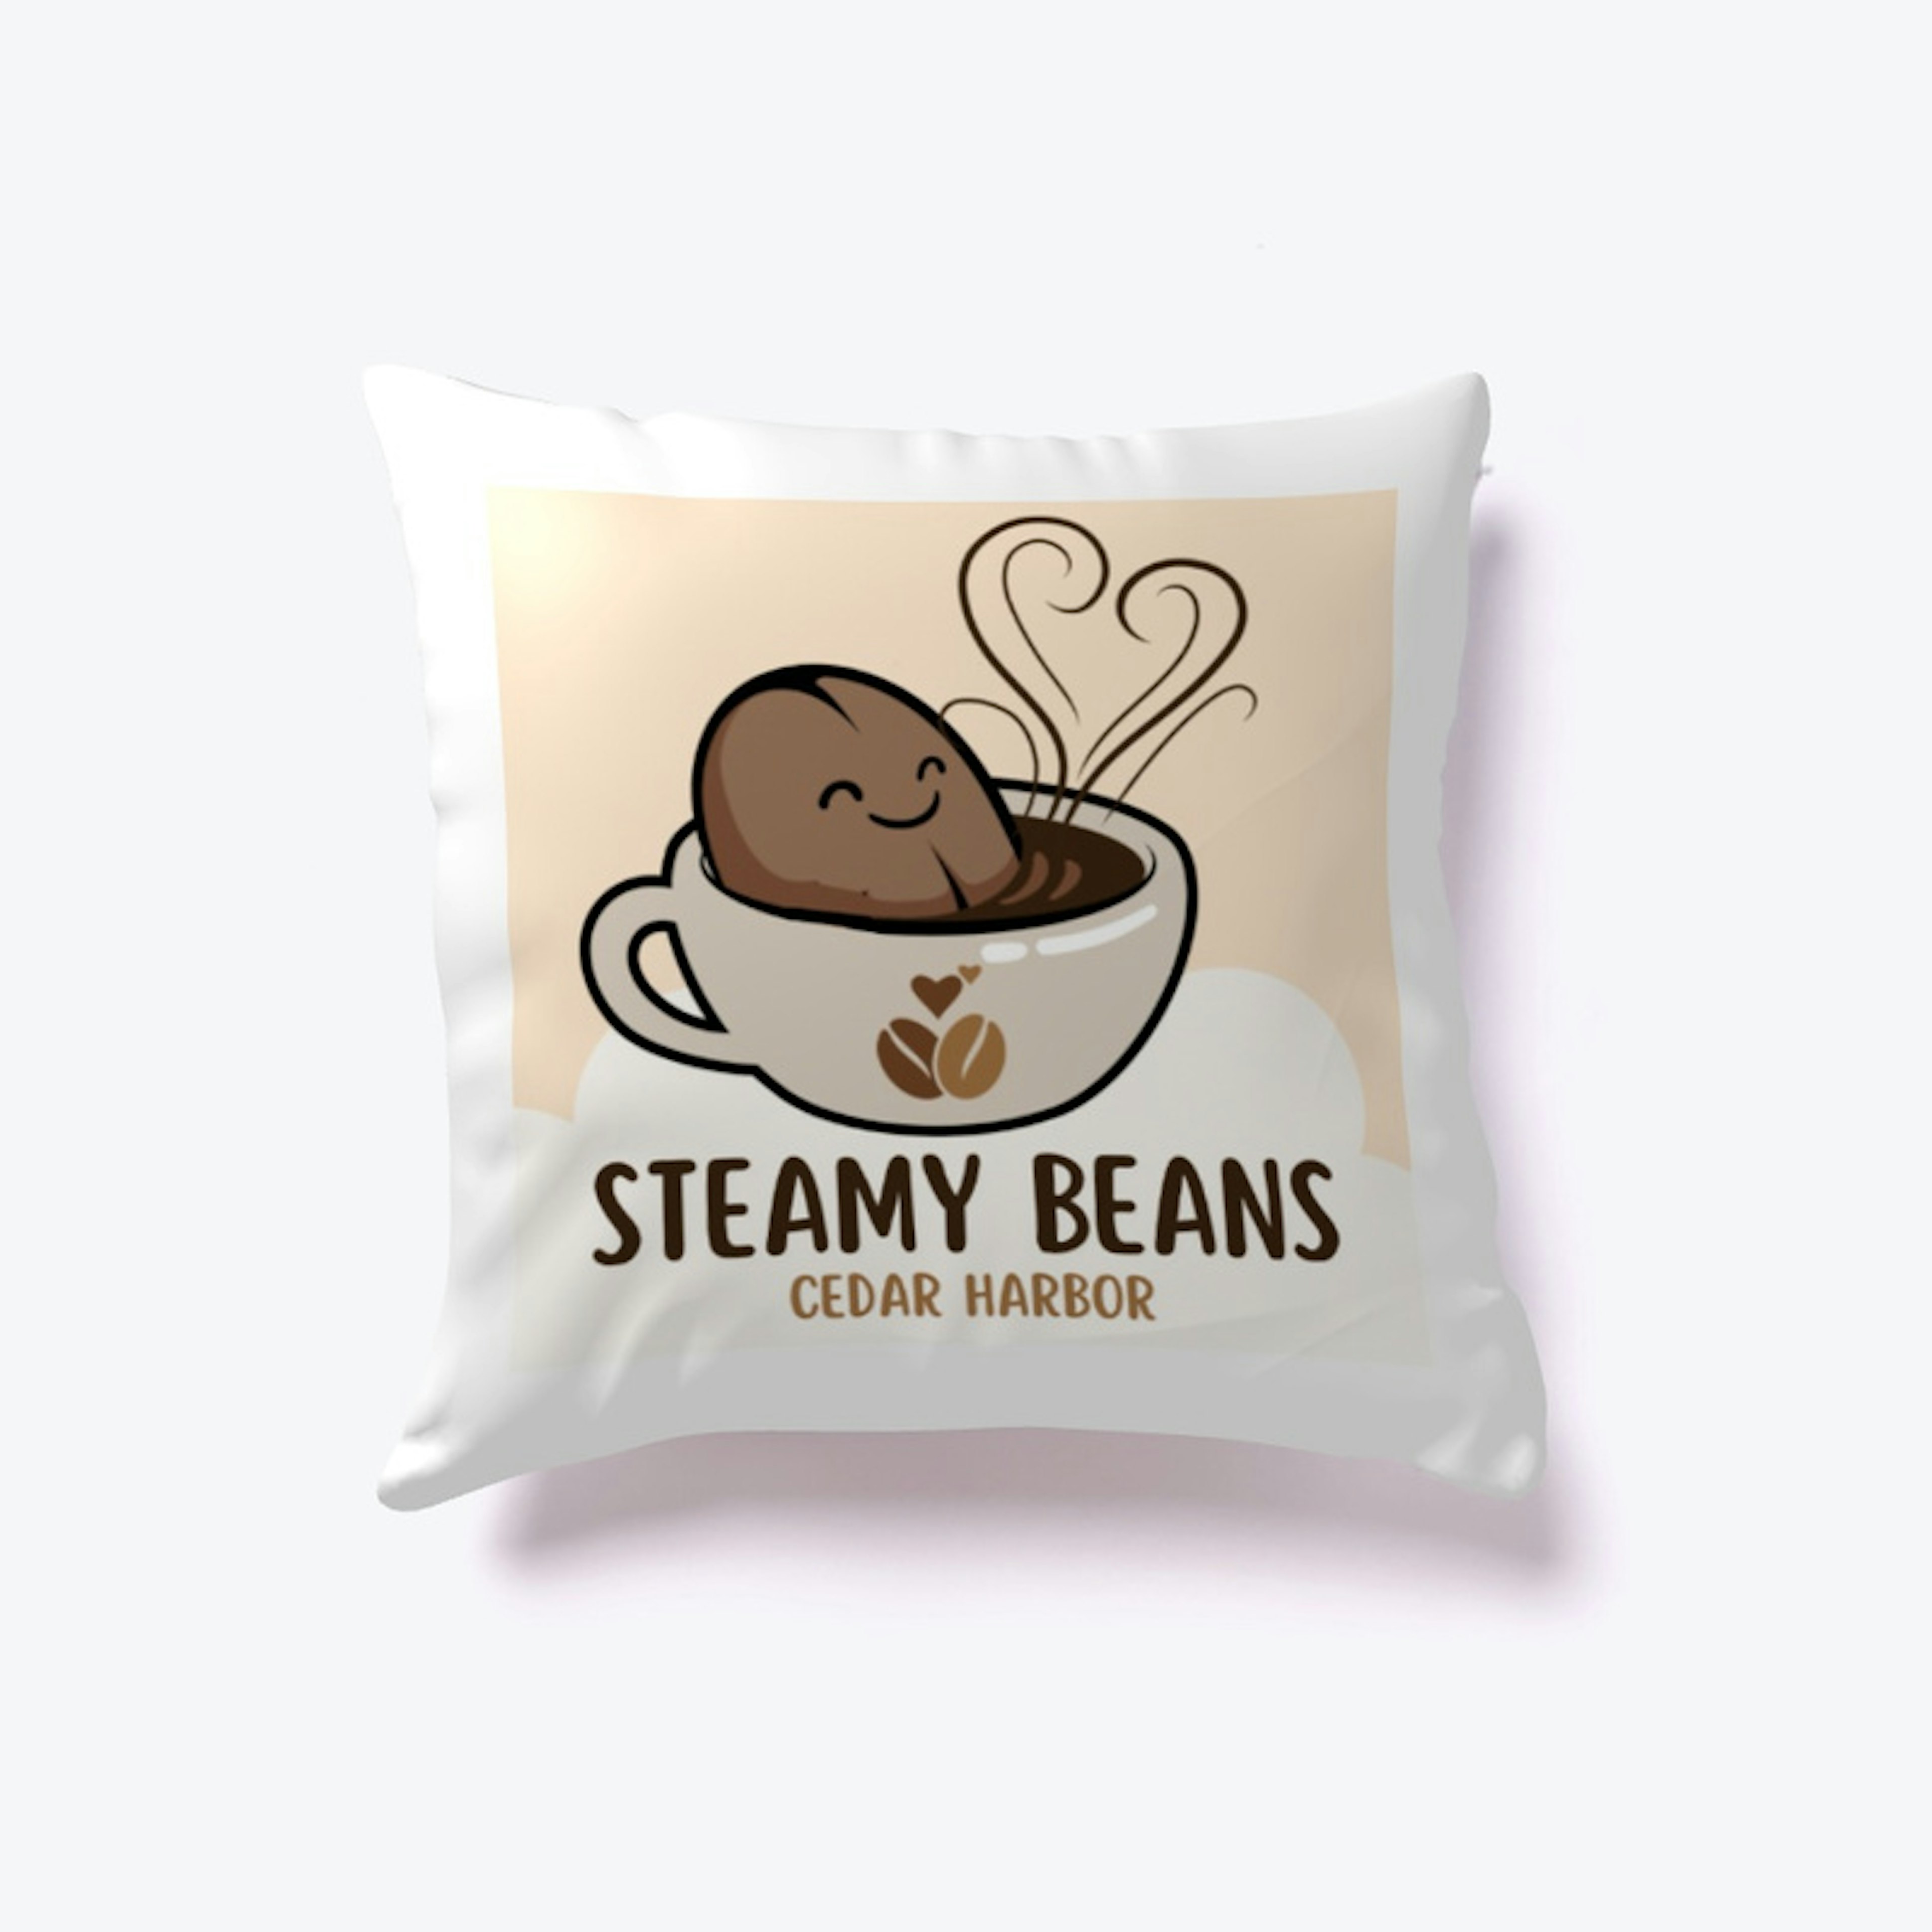 Steamy Beans Cafe of Cedar Harbor